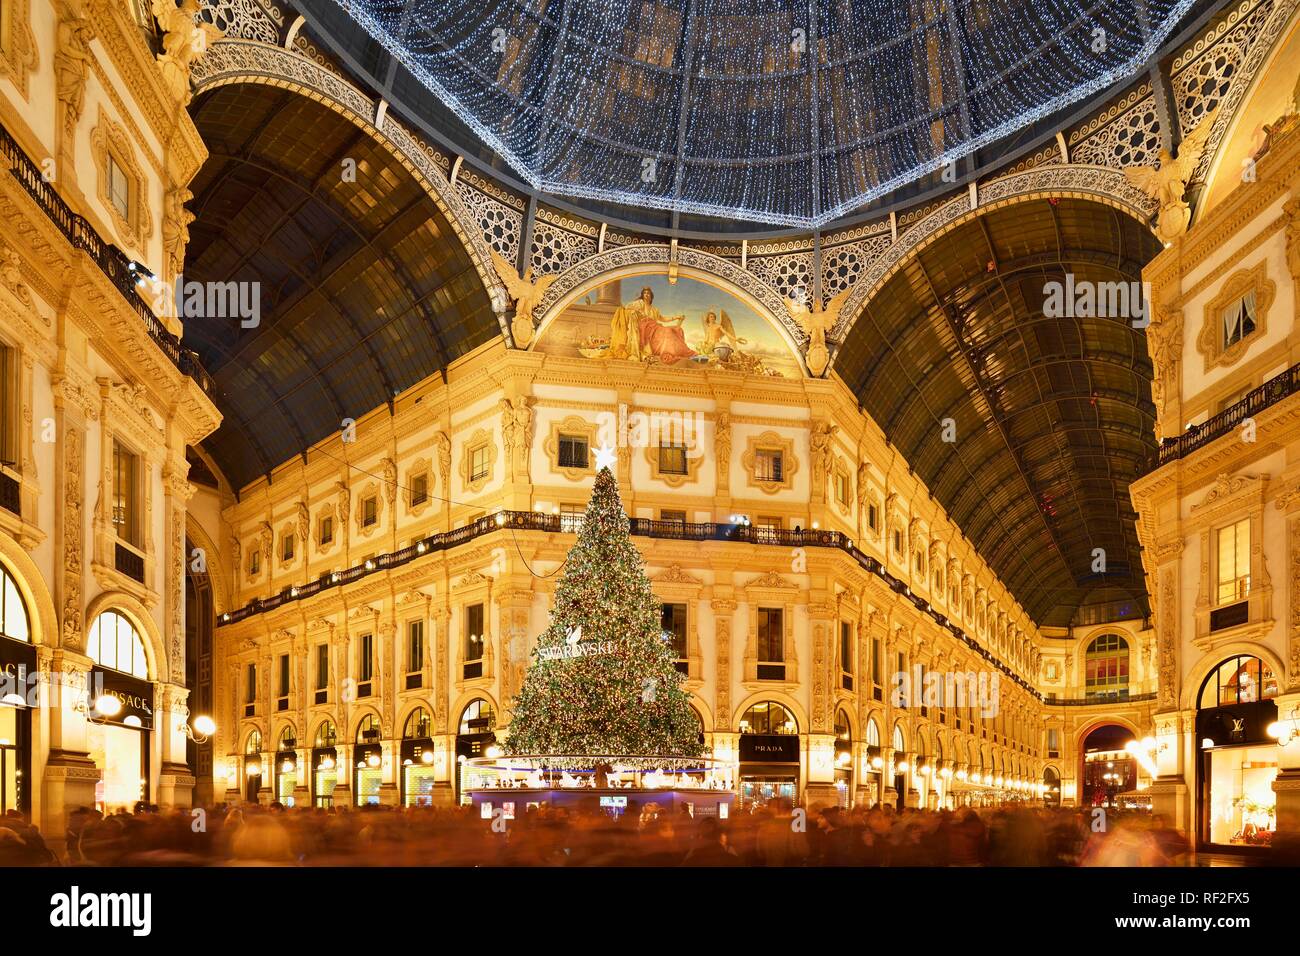 Leute an Weihnachten und Weihnachtsbeleuchtung in Luxus Shopping Arcade bestaunen, überdachte Galerie Galleria Vittorio Emanuele II. Stockfoto